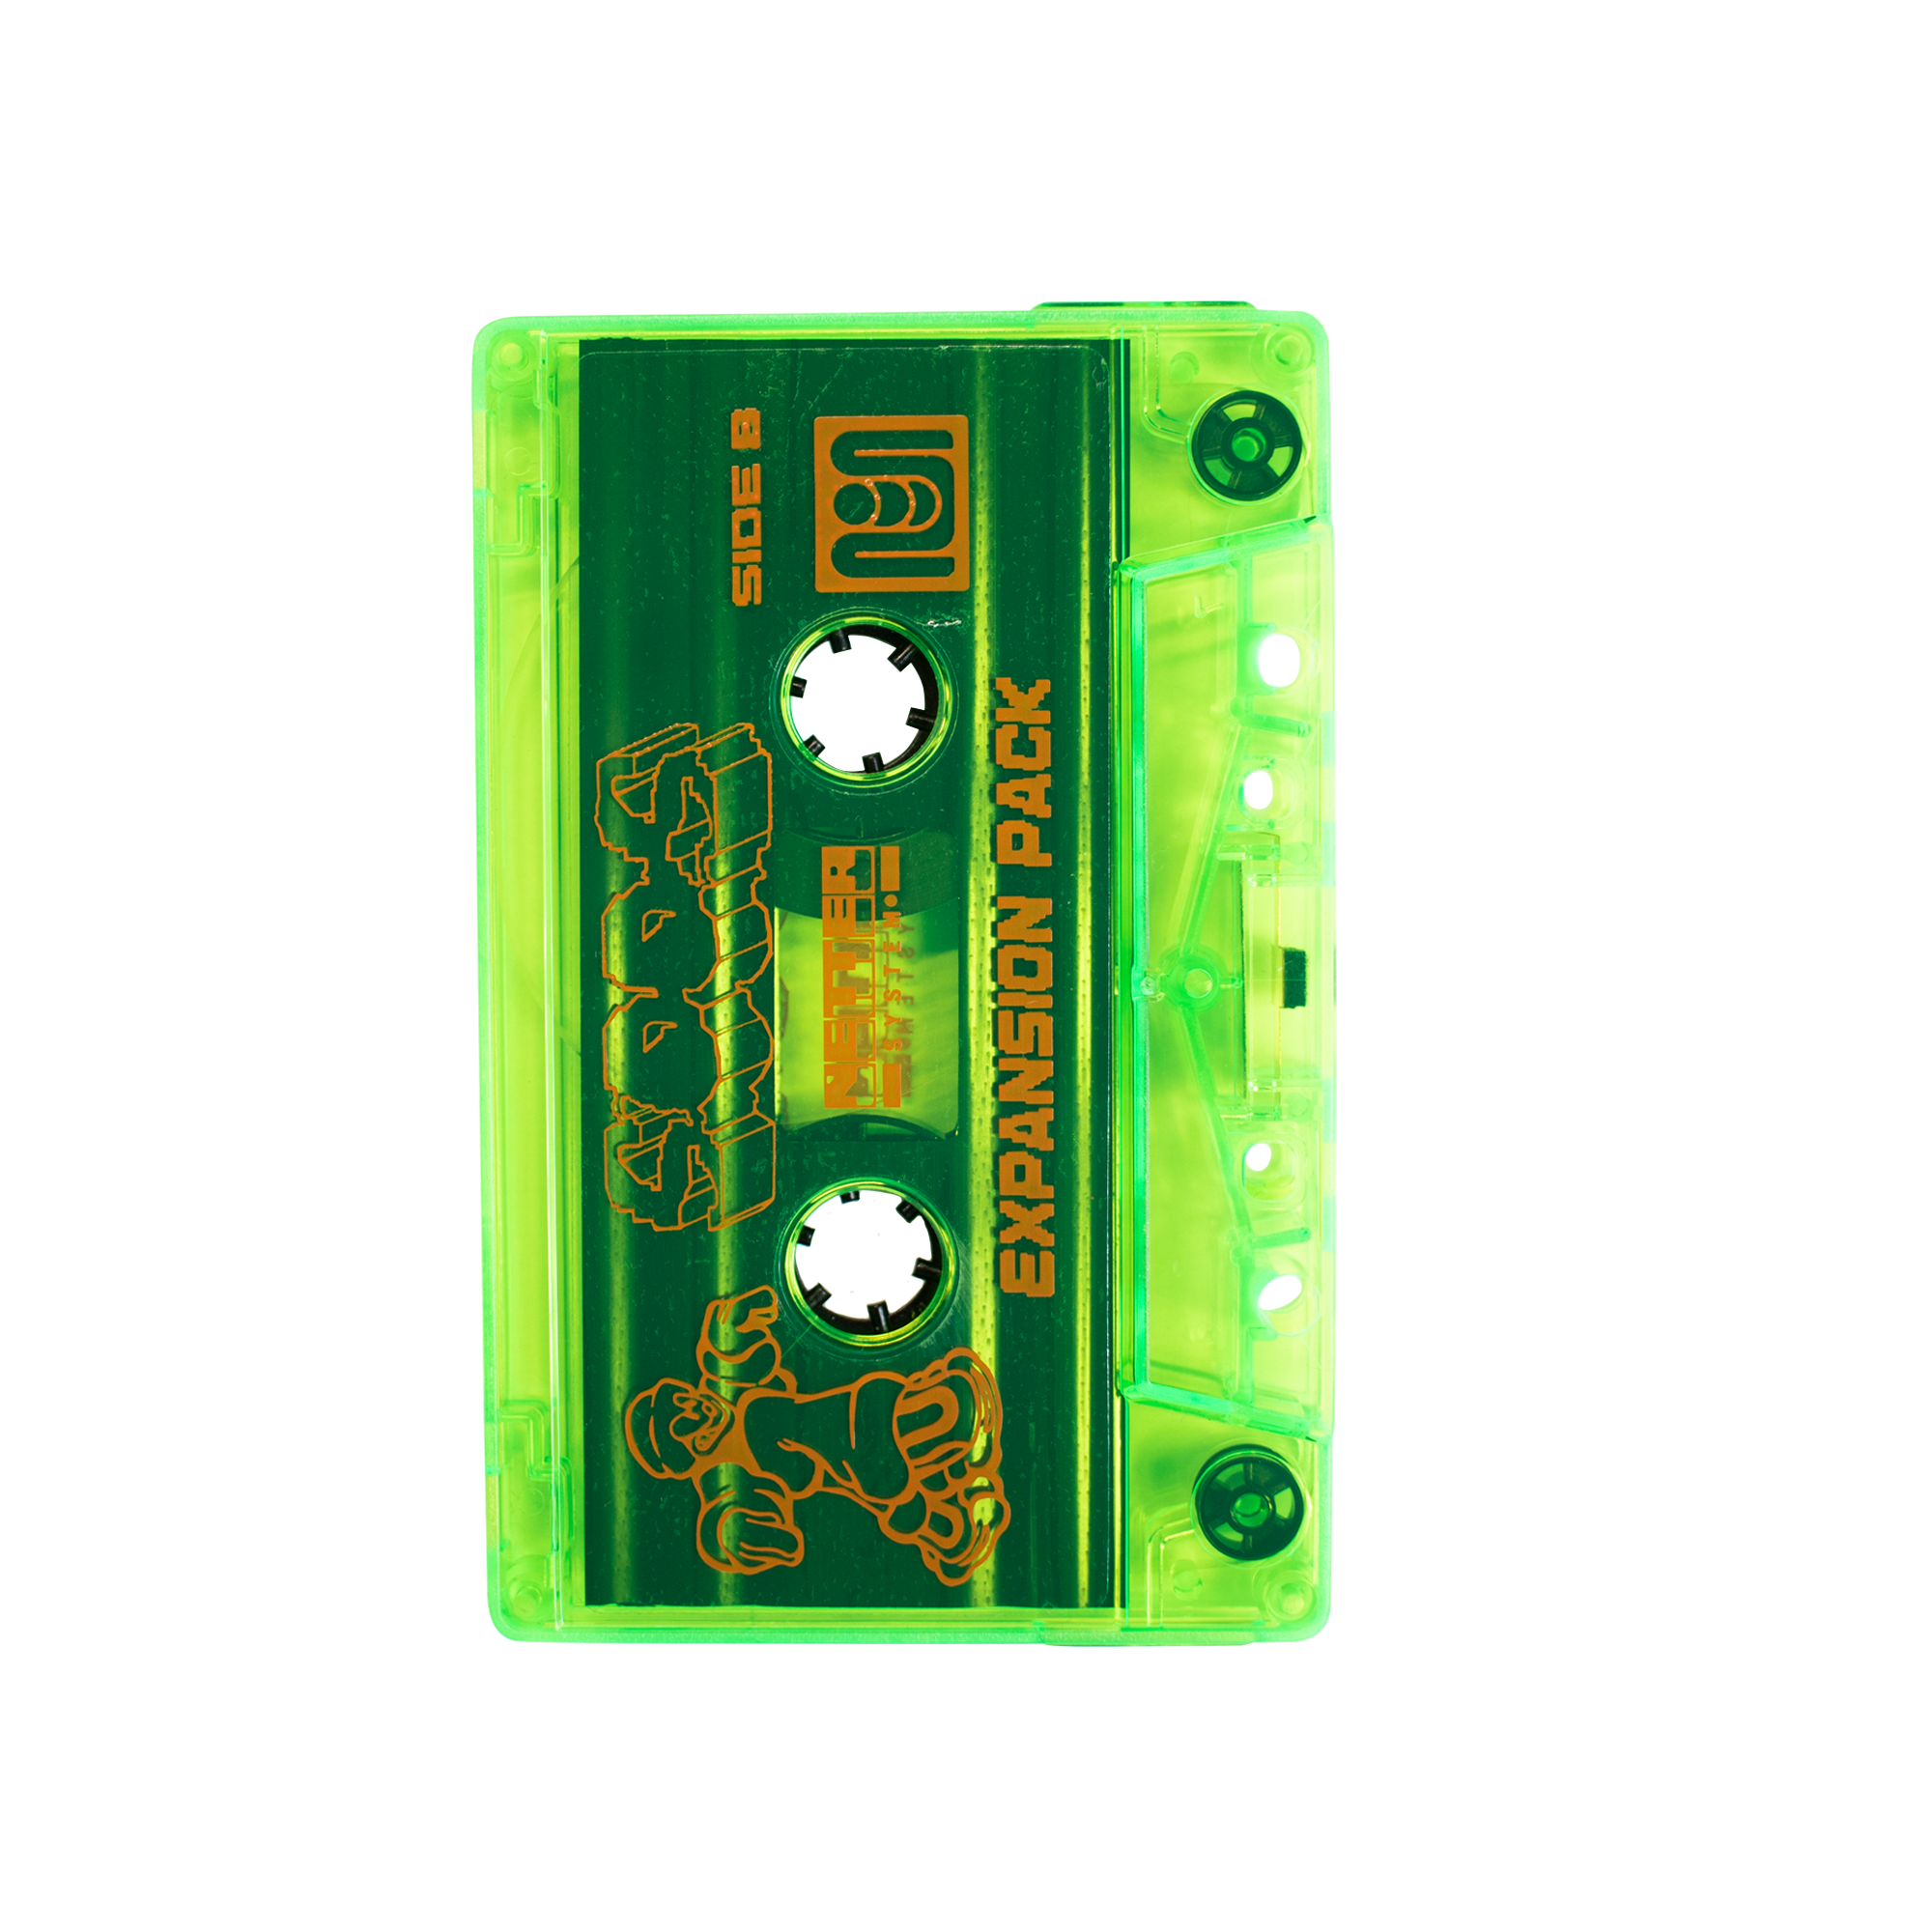 Netter System 004 - Soos Cassette Tape